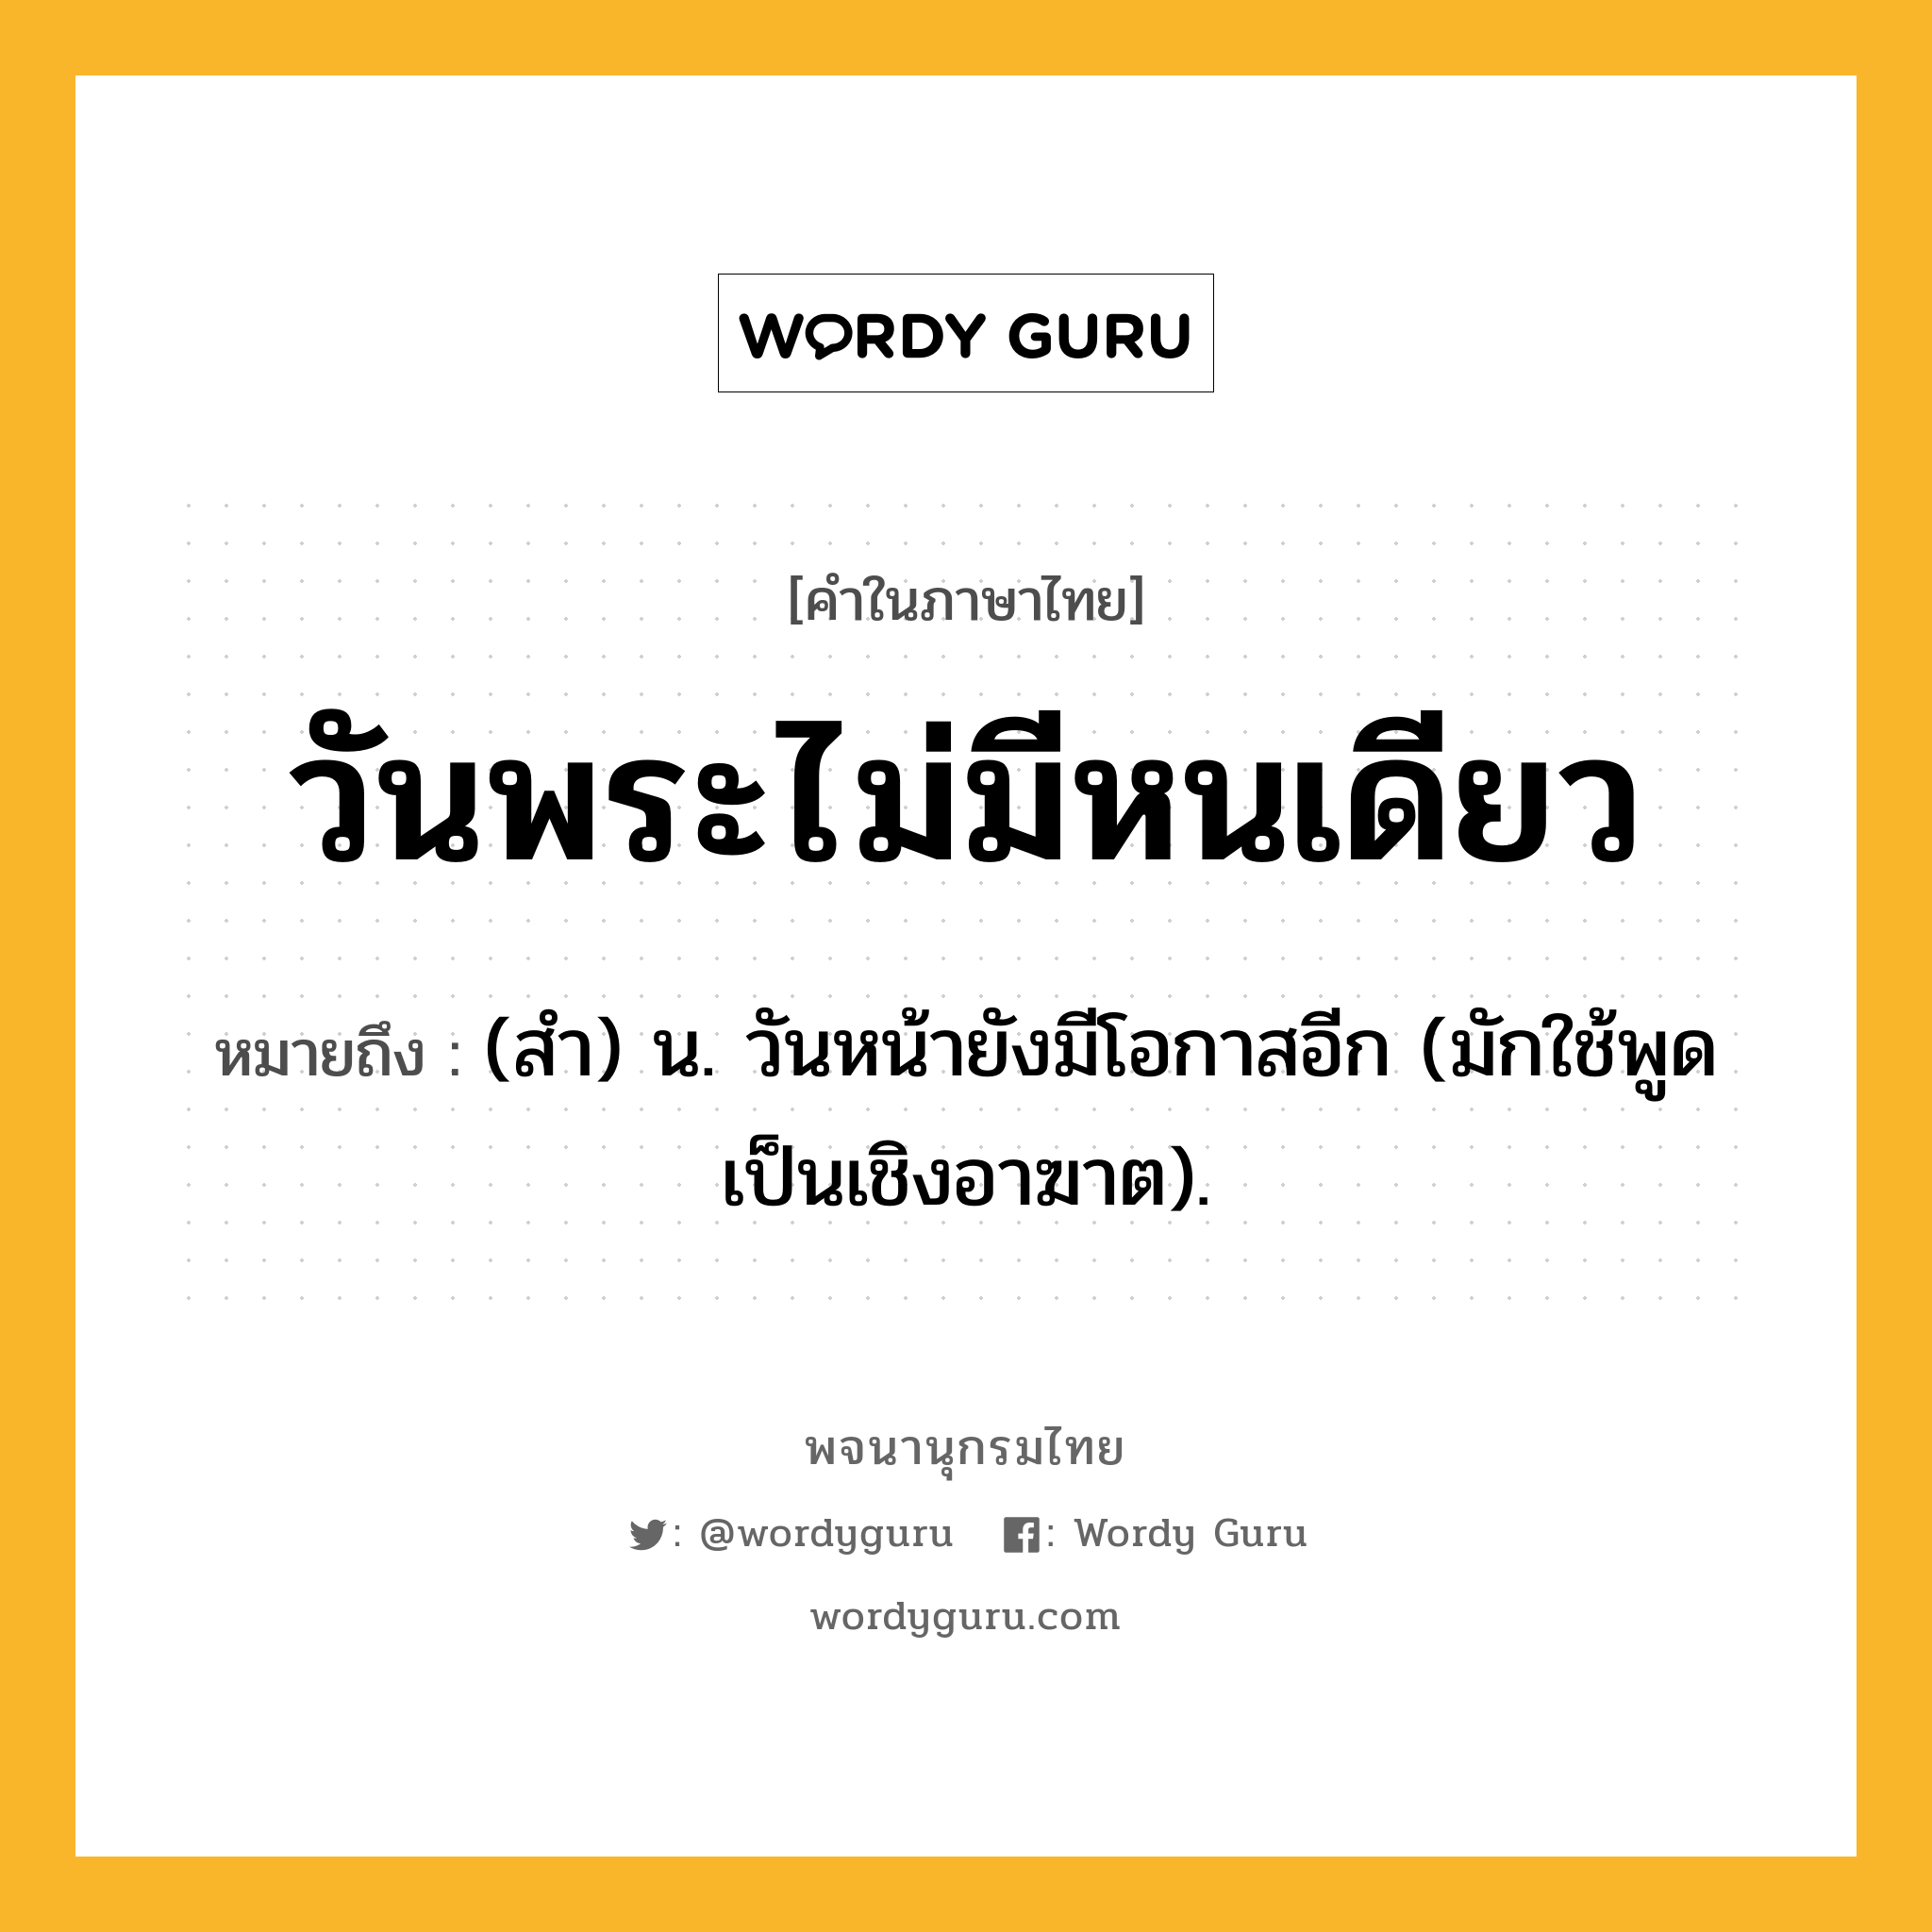 วันพระไม่มีหนเดียว ความหมาย หมายถึงอะไร?, คำในภาษาไทย วันพระไม่มีหนเดียว หมายถึง (สํา) น. วันหน้ายังมีโอกาสอีก (มักใช้พูดเป็นเชิงอาฆาต).